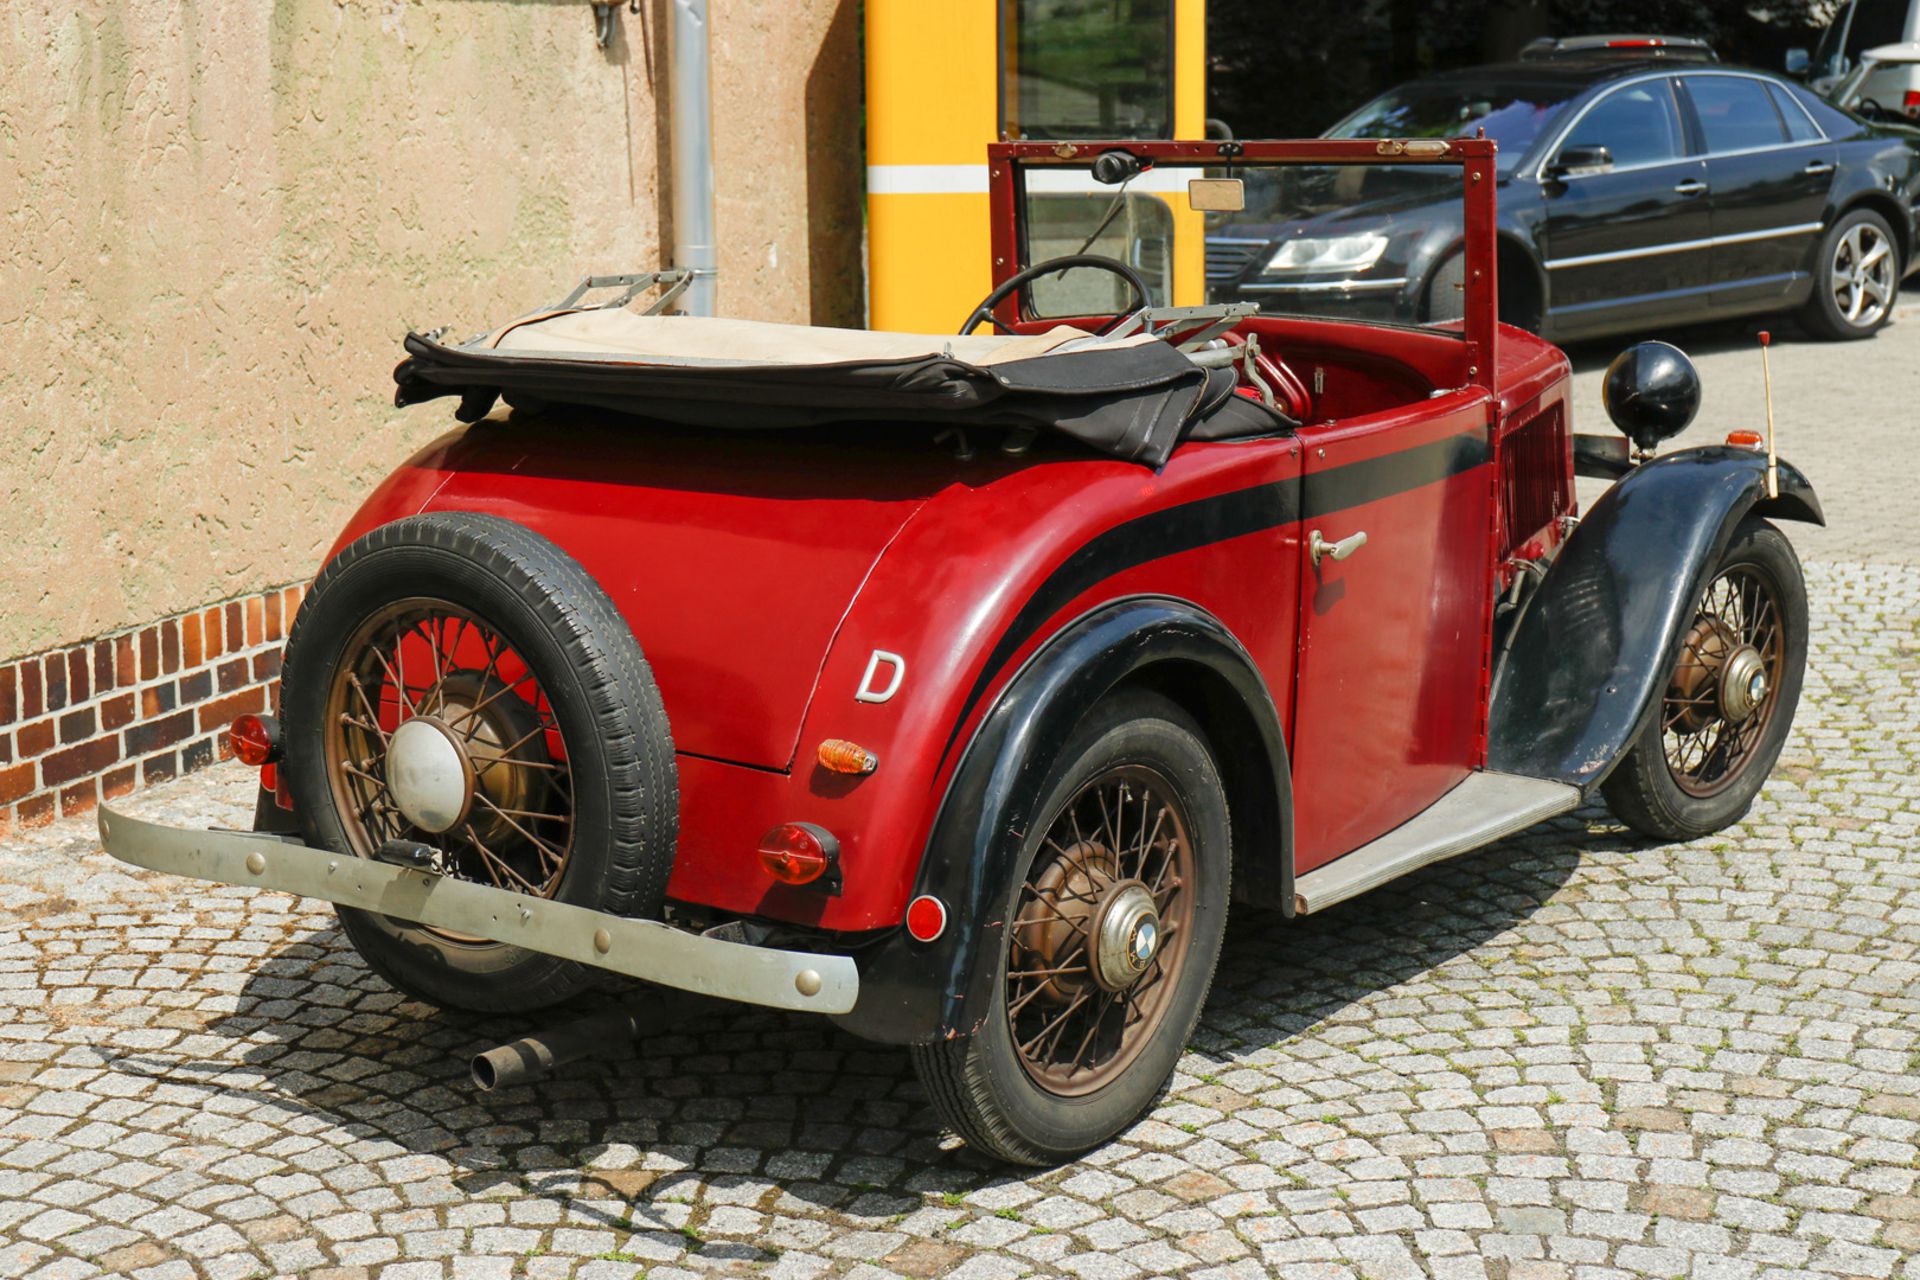 Oldtimer BMW Cabriolet 1933 AM 4 / 33442, ccm 782, PS 20/3500, 4 Zylinder, Stahlkarosserie, gefertig - Bild 4 aus 25